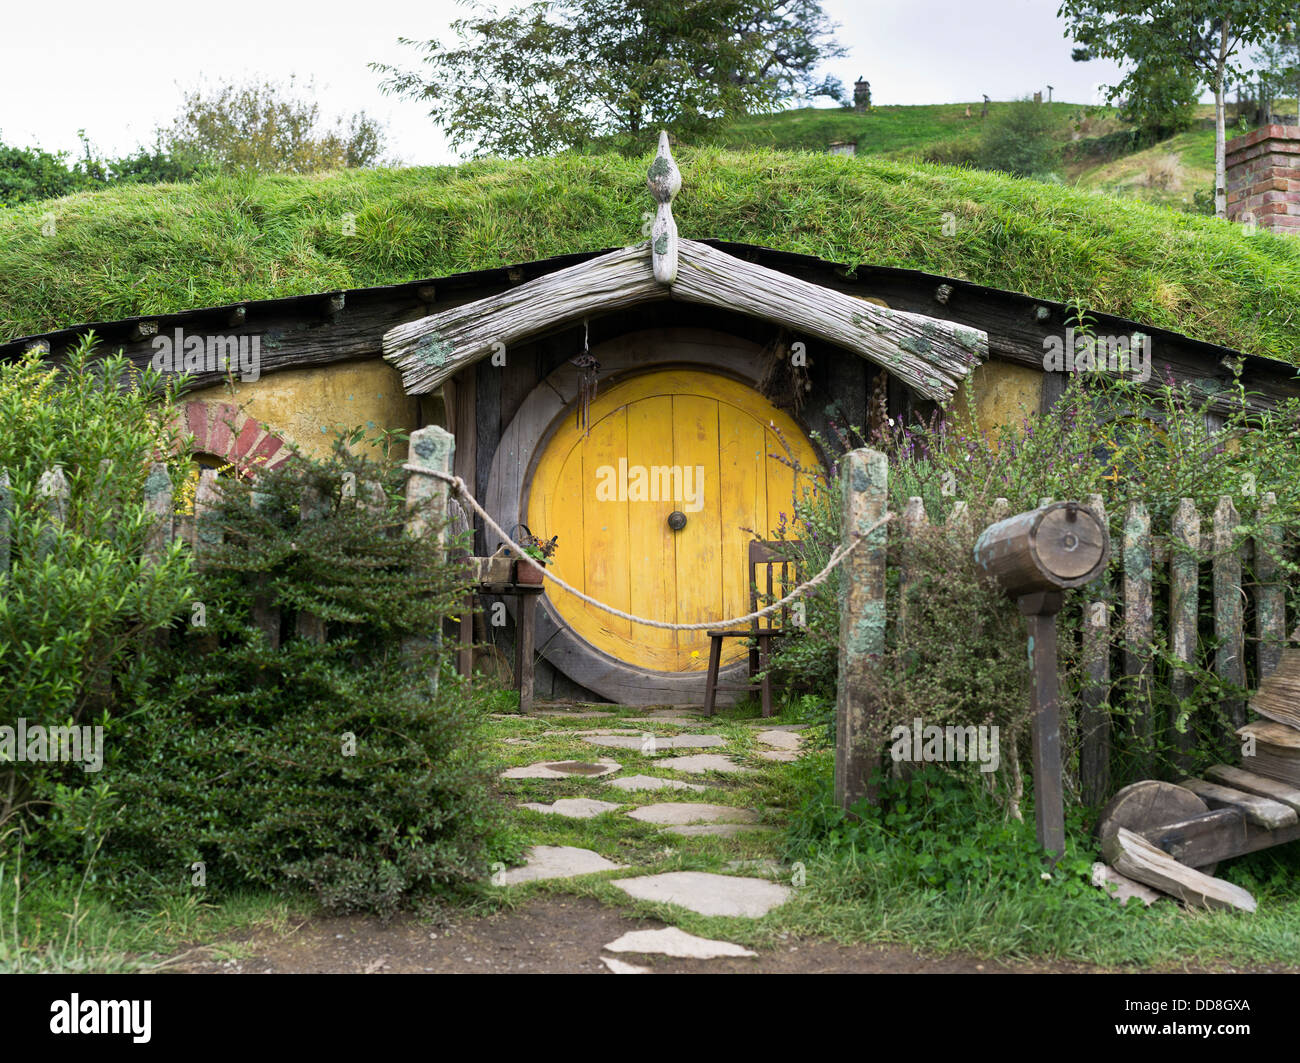 Dh Hobbit cottage HOBBITON PORTA NUOVA ZELANDA Giardino del set di un film sito film Il Signore degli Anelli film hobbit house la terra di mezzo Foto Stock